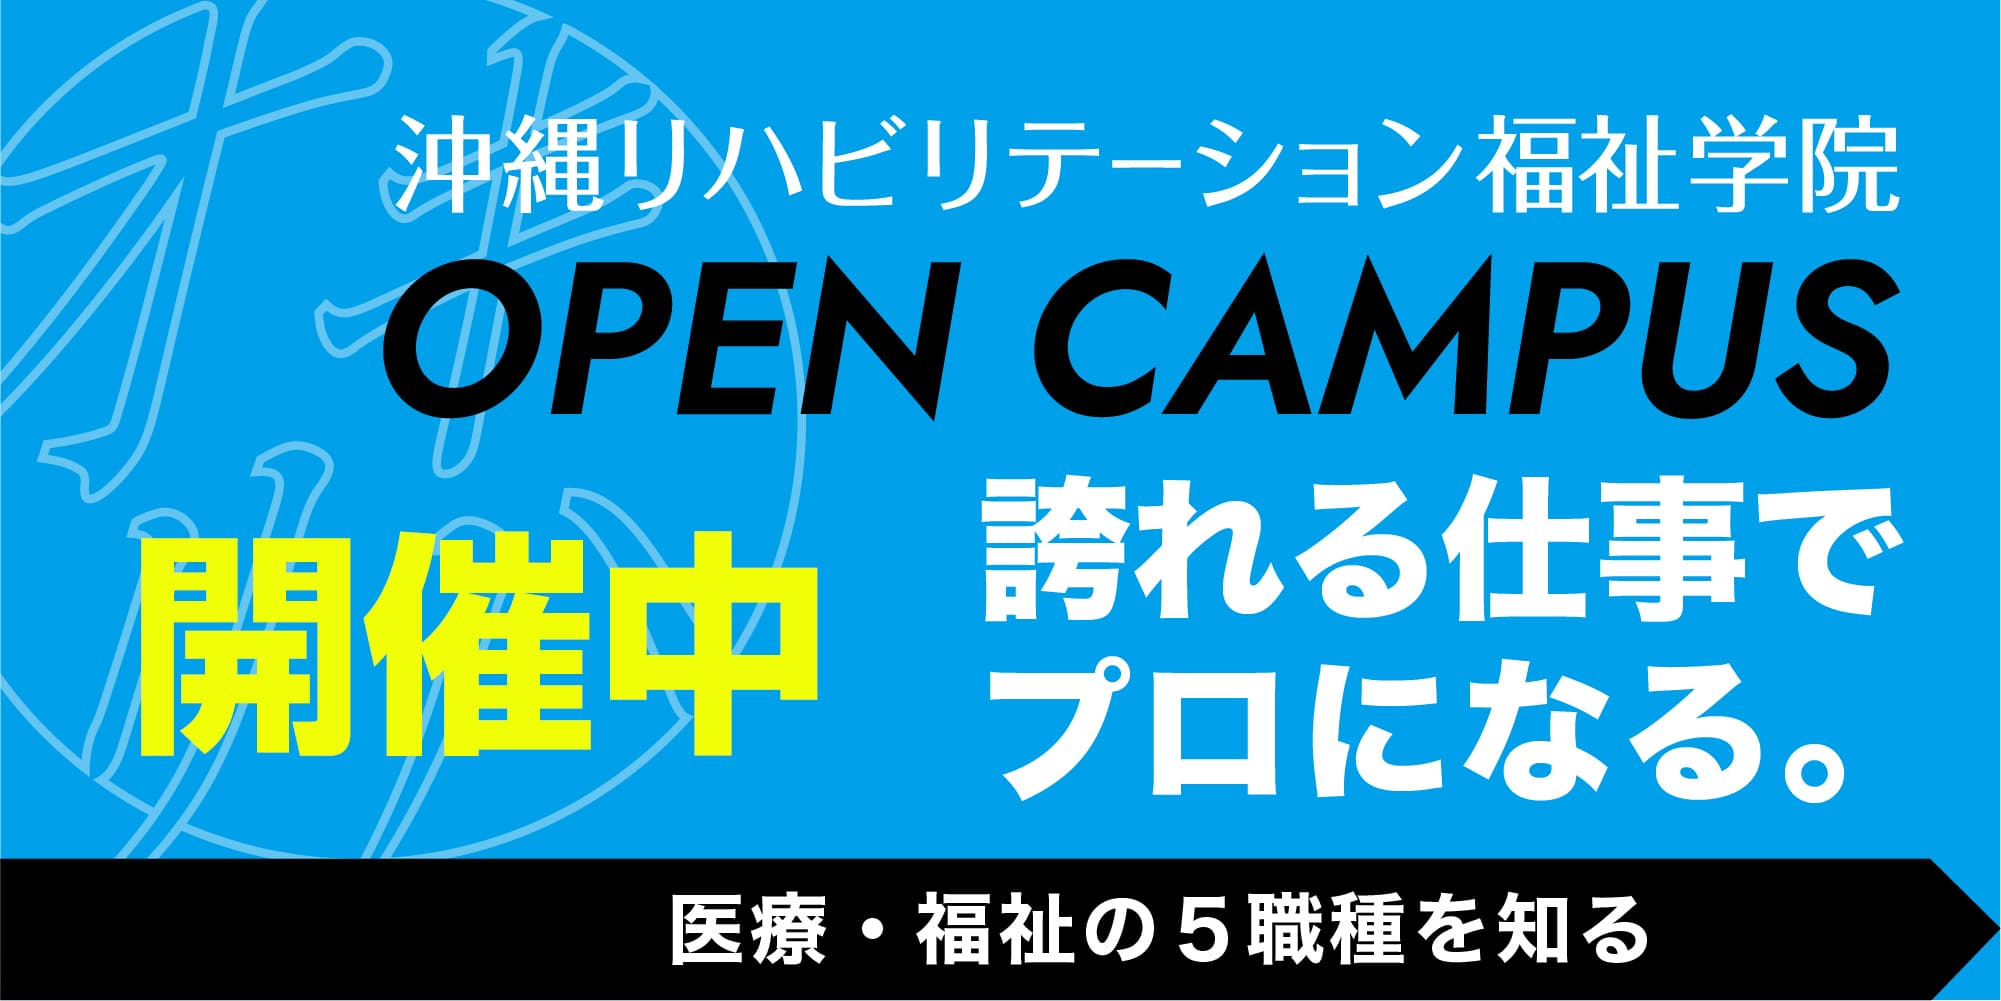 沖縄リハビリテーション福祉学院 オープンキャンパス